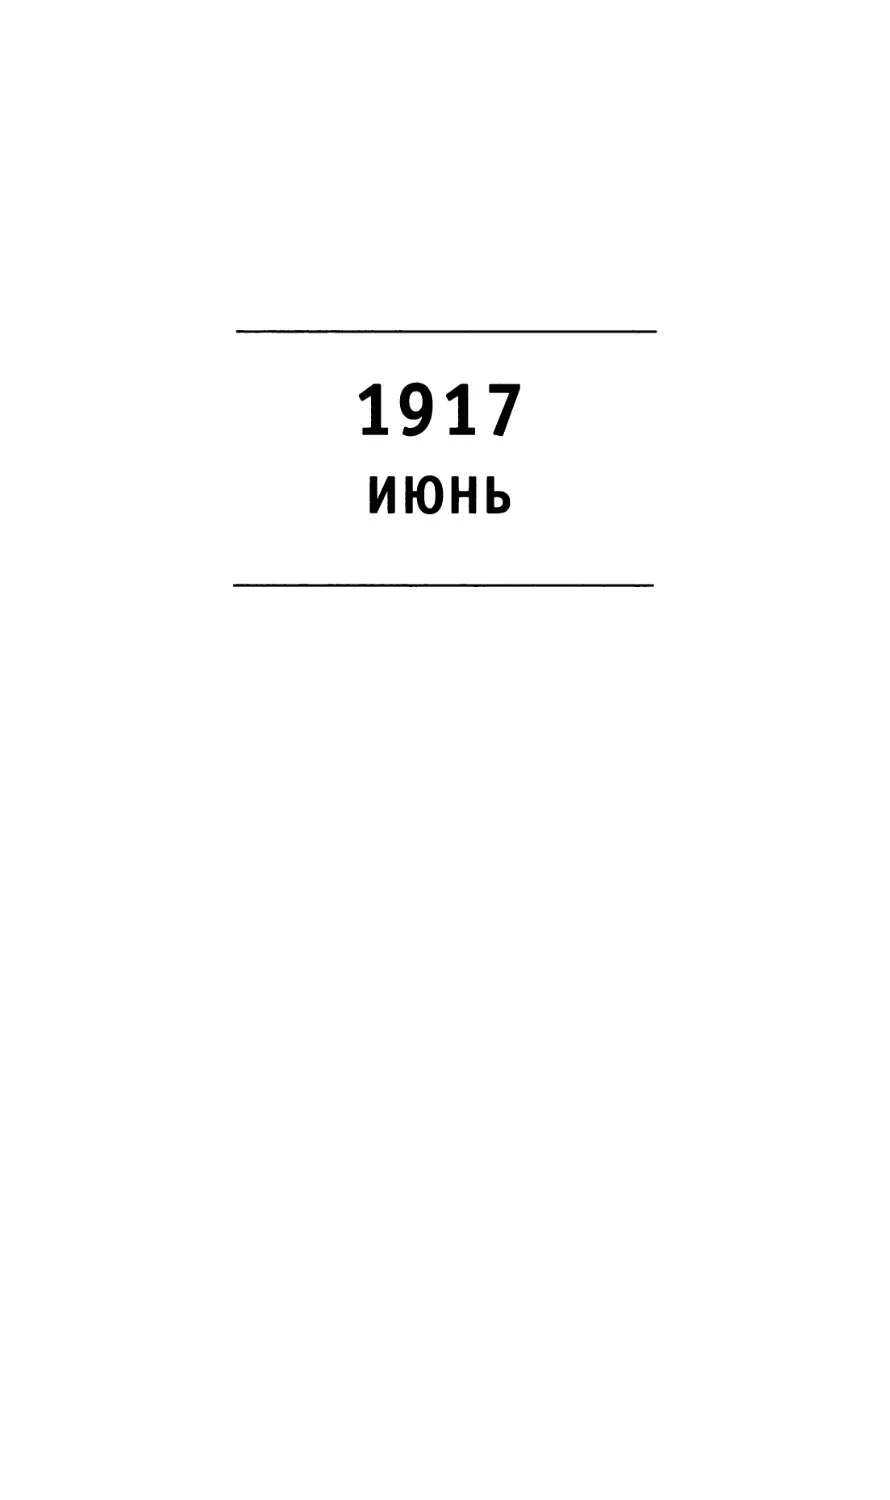 1917 Июнь